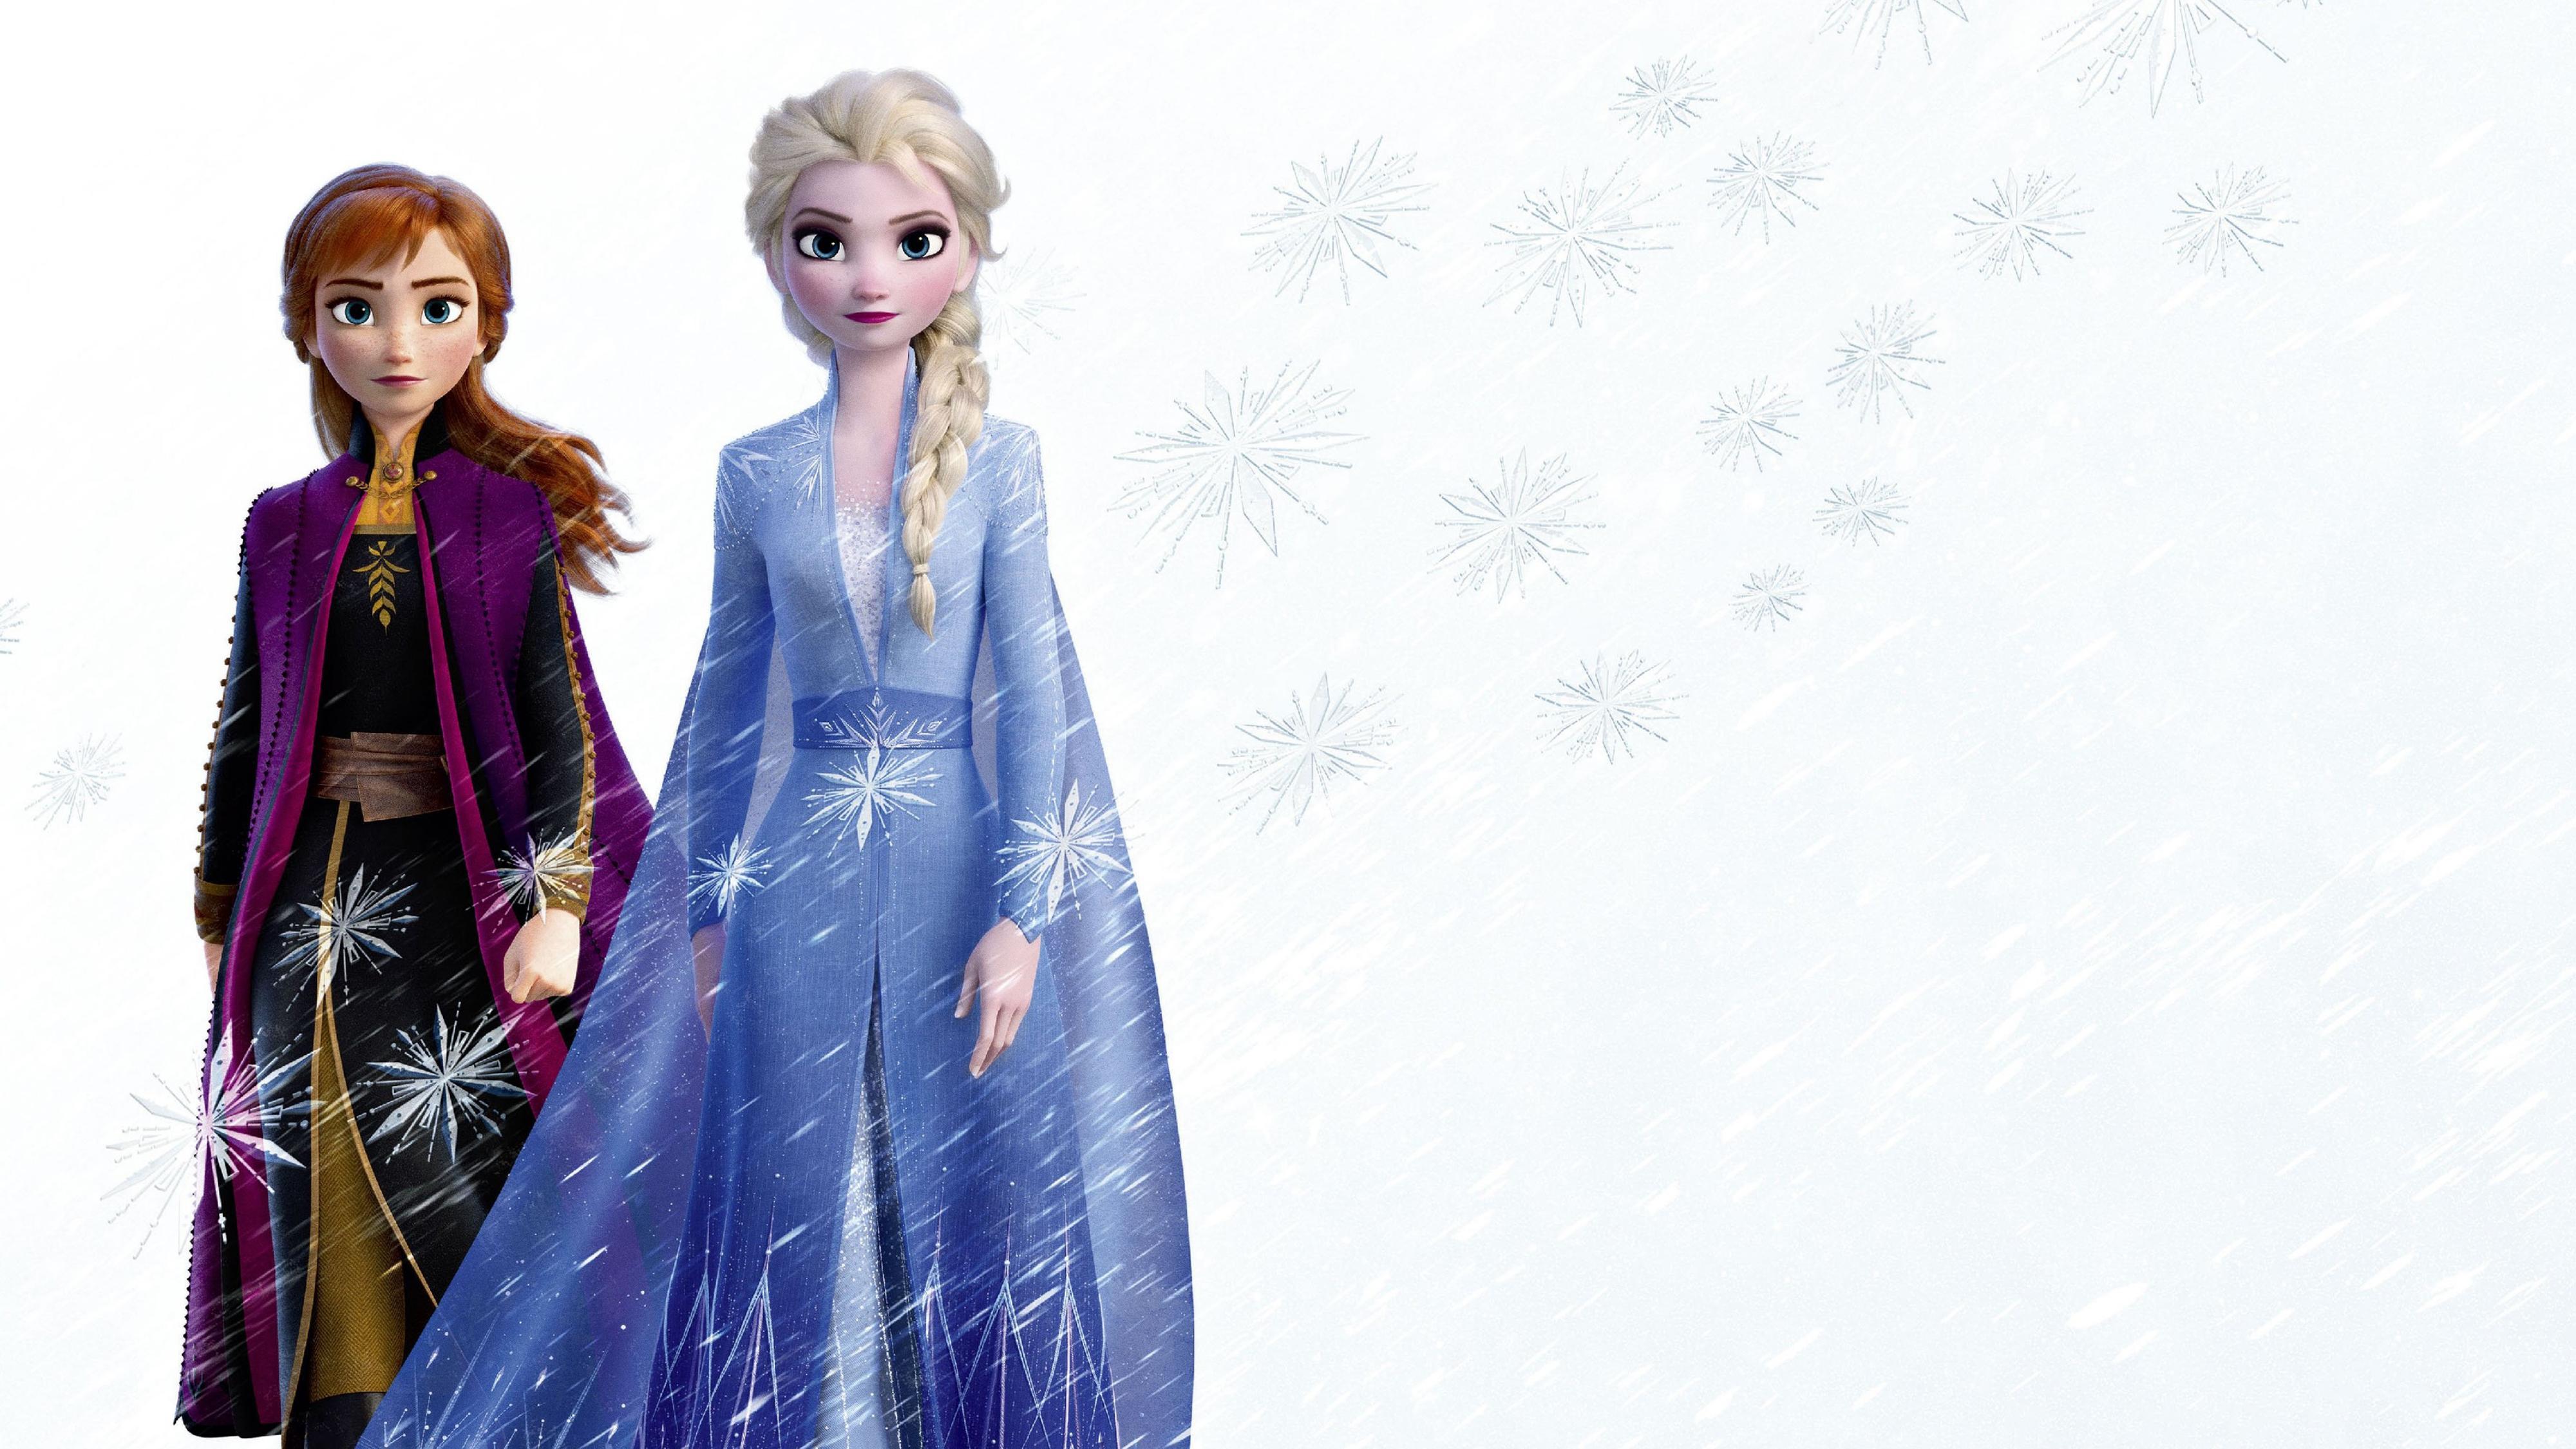 Frozen 2 Elsa & Anna Wallpaper